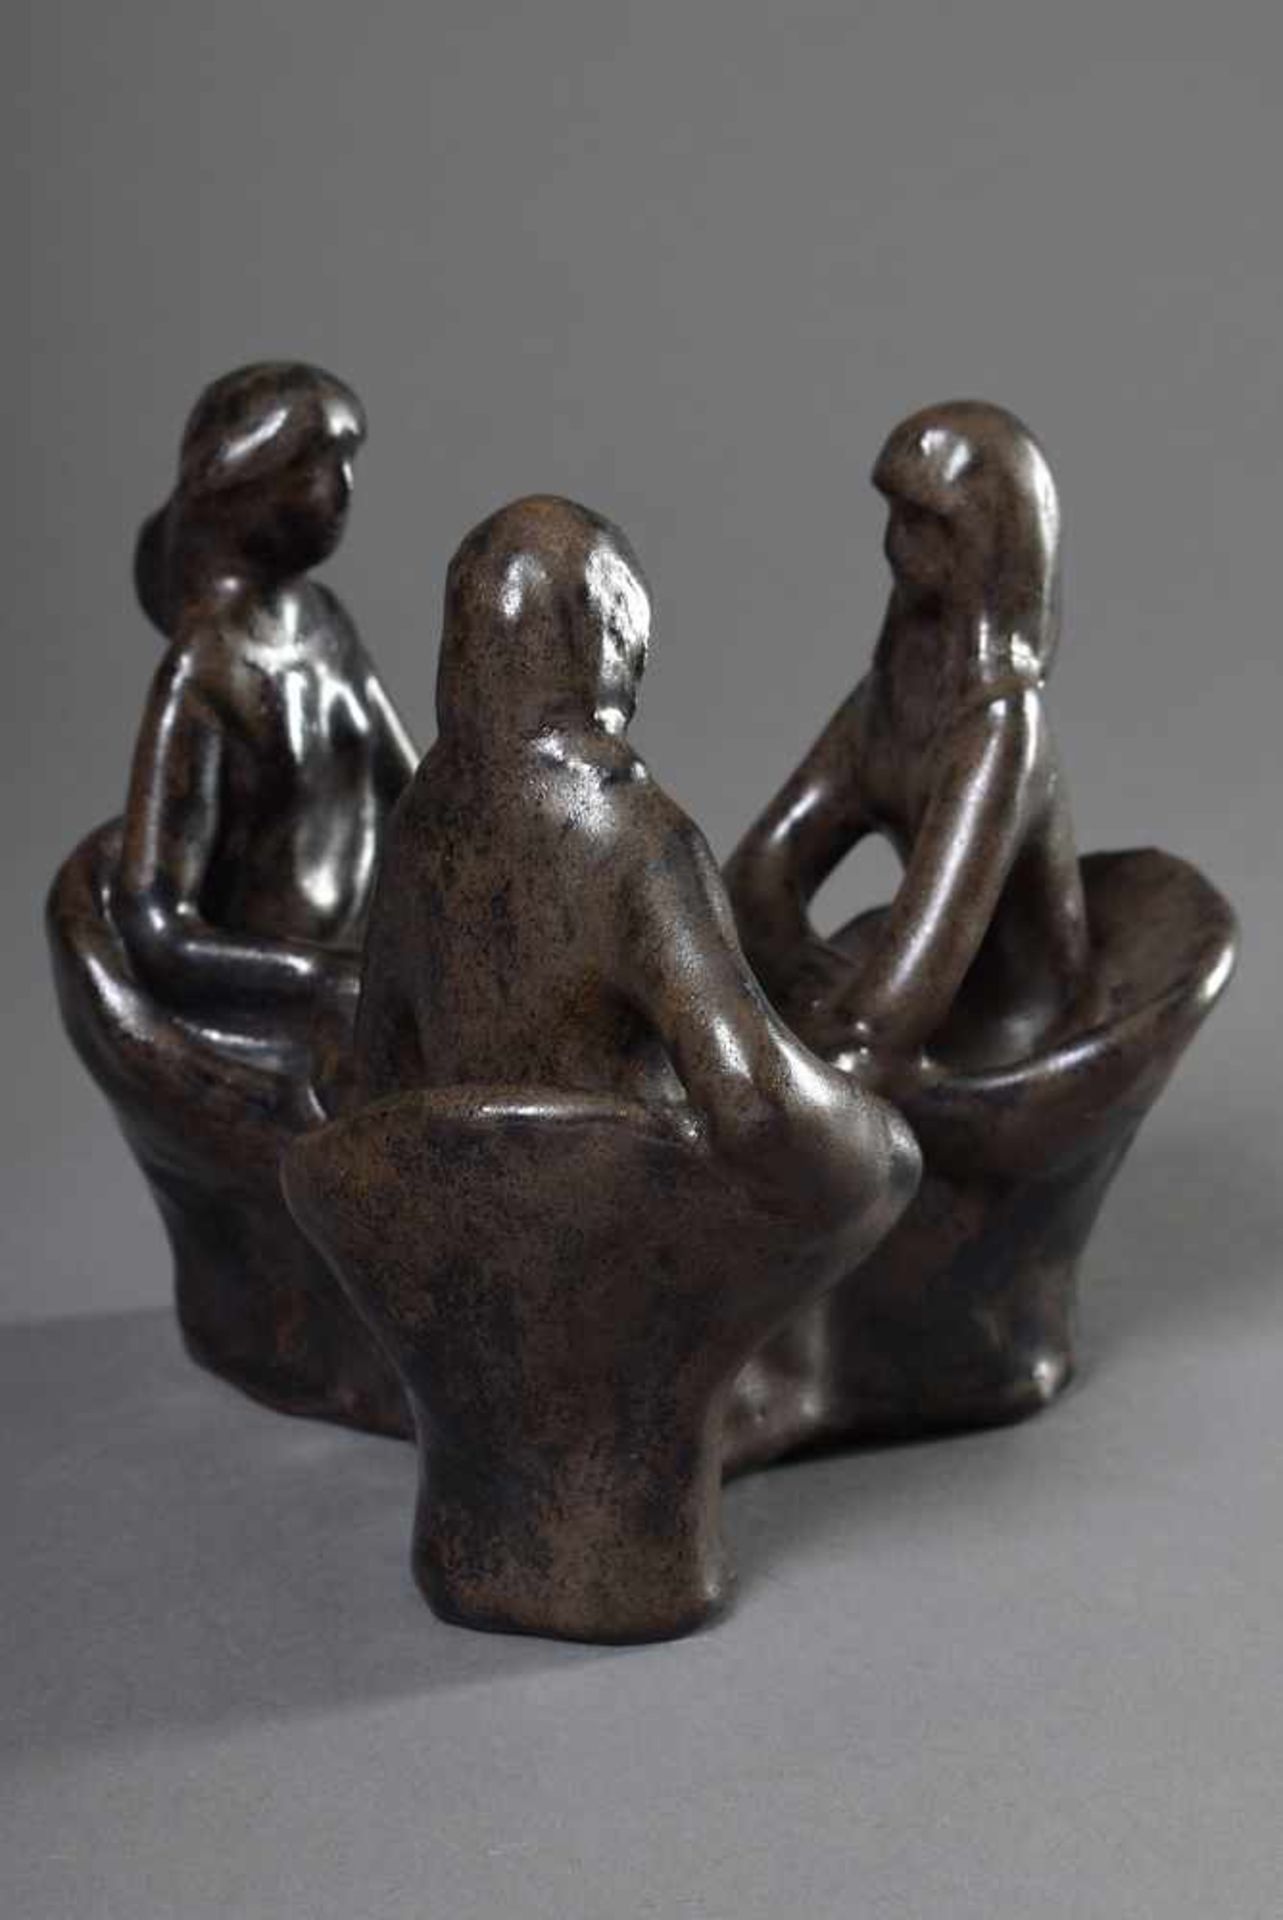 Maetzel, Monika (1917-2010) "Drei Personen am Tisch" 1979, Keramik dunkelbraun glasiert, im Boden - Image 3 of 5